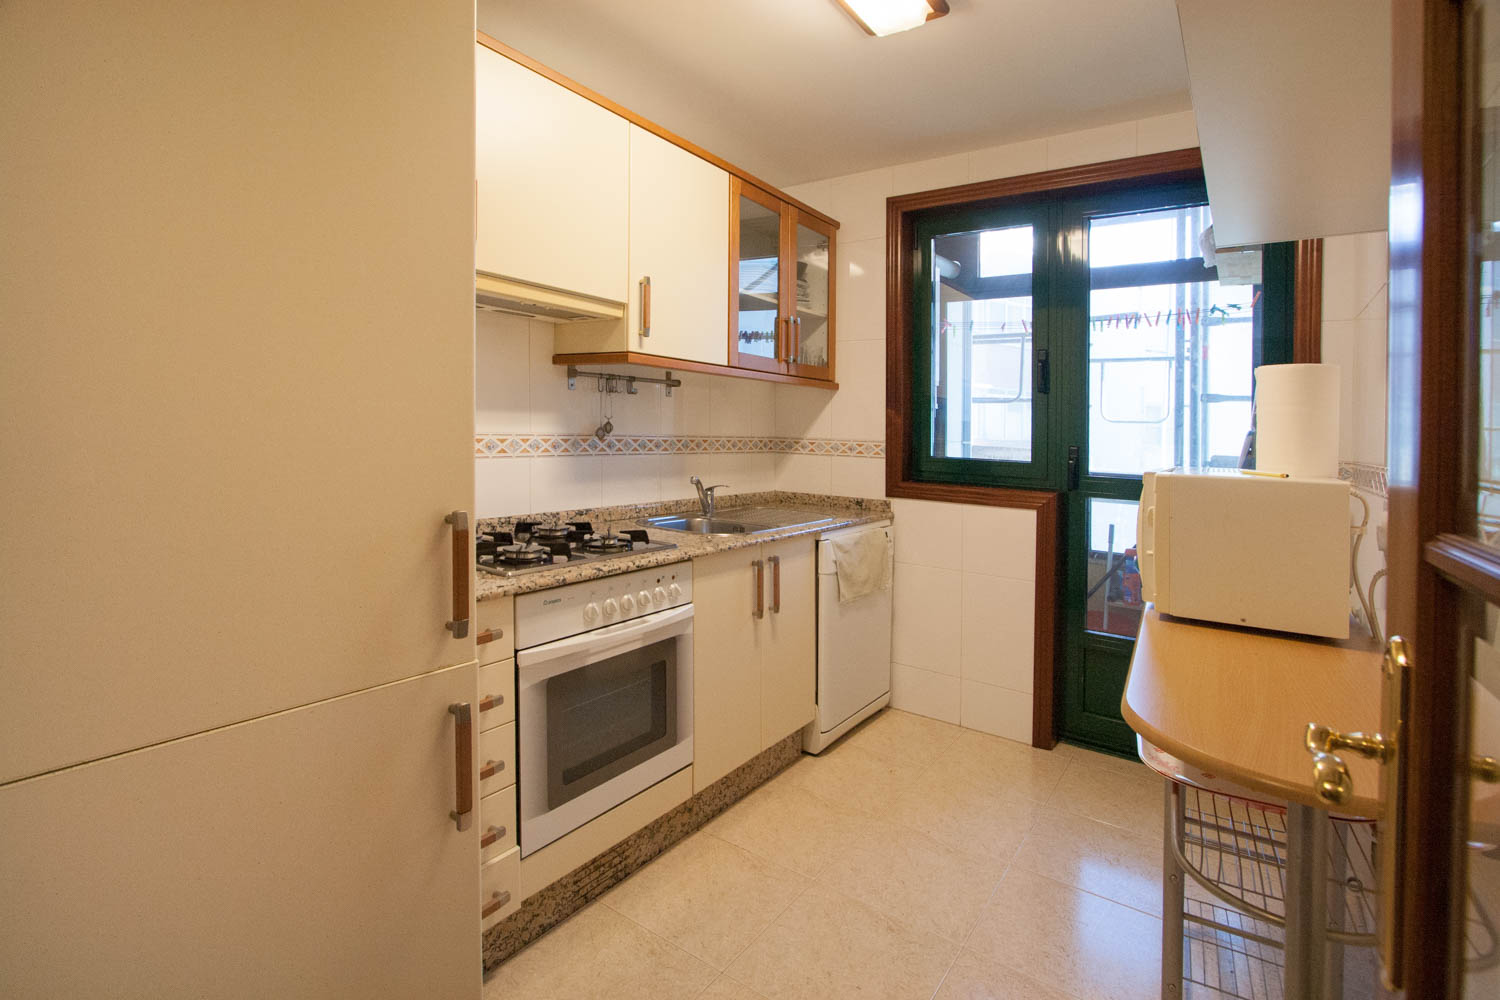 Cocina clásica beige piso Sada con carpintería de pvc verde para acceso a lavadero tendedero_ foto previa